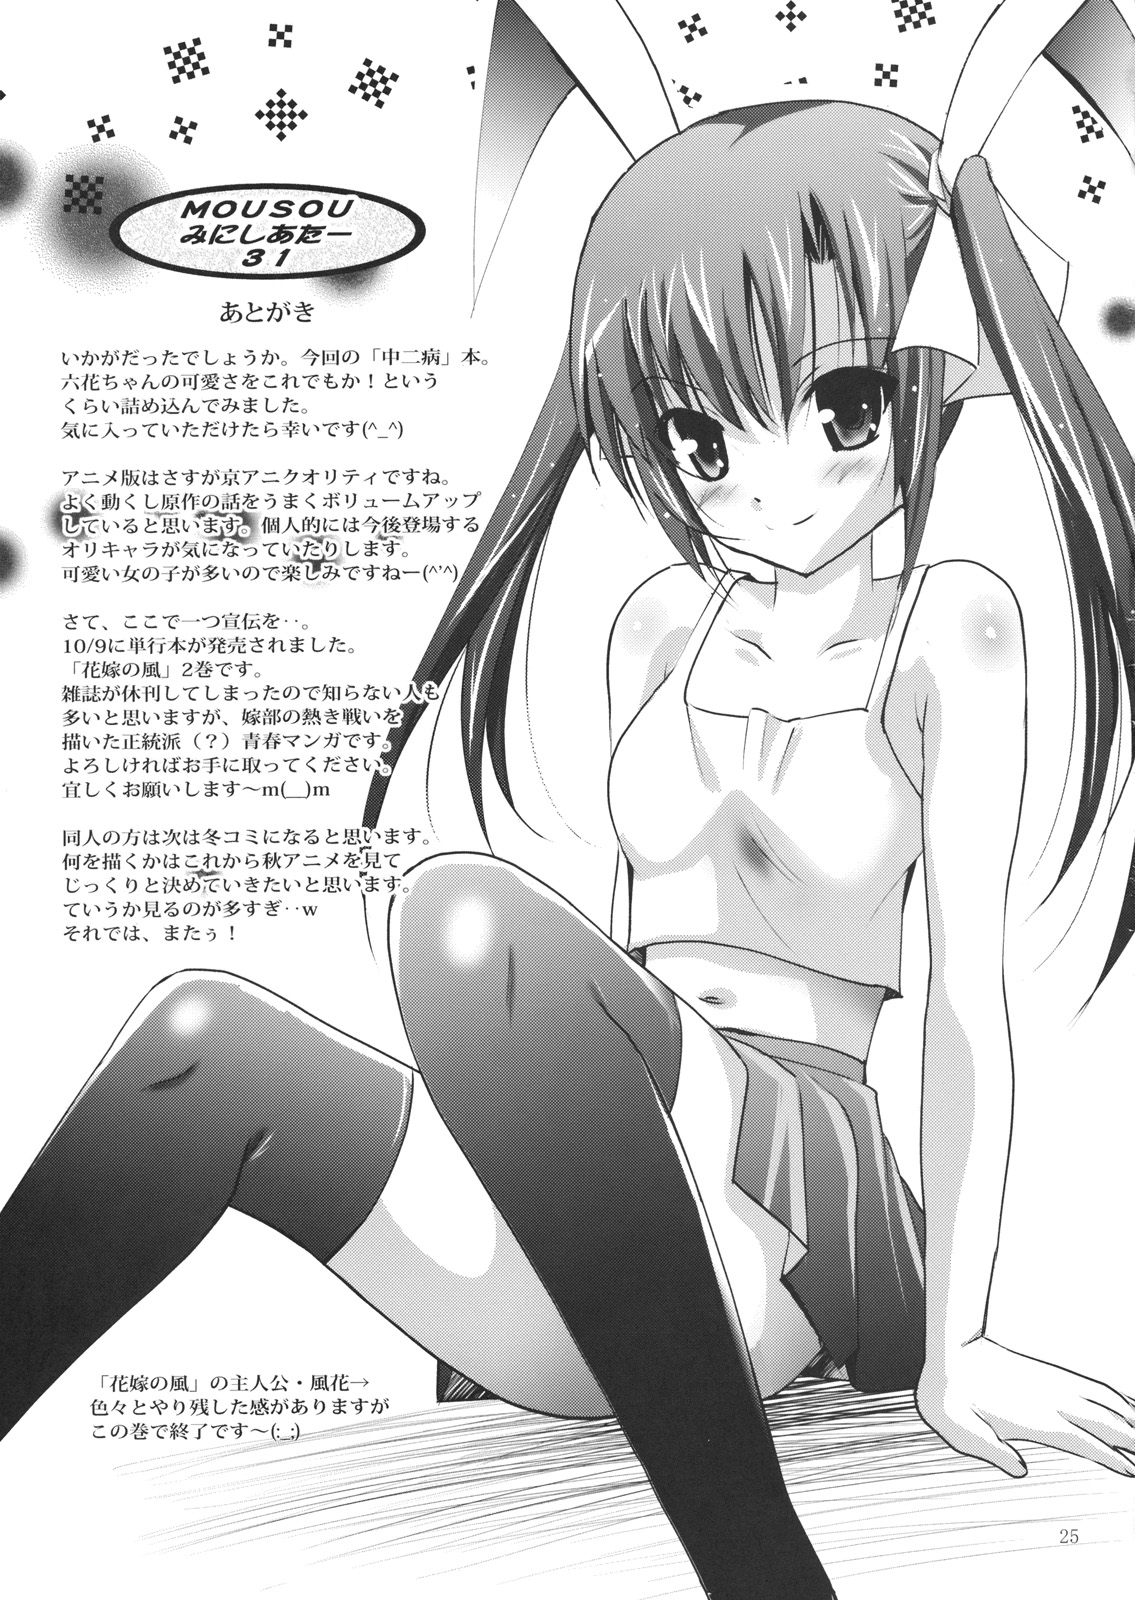 (SC57) [Studio BIG-X (Arino Hiroshi)] MOUSOU Mini Theater 31 (Chuunibyou demo Koi ga Shitai!) page 24 full